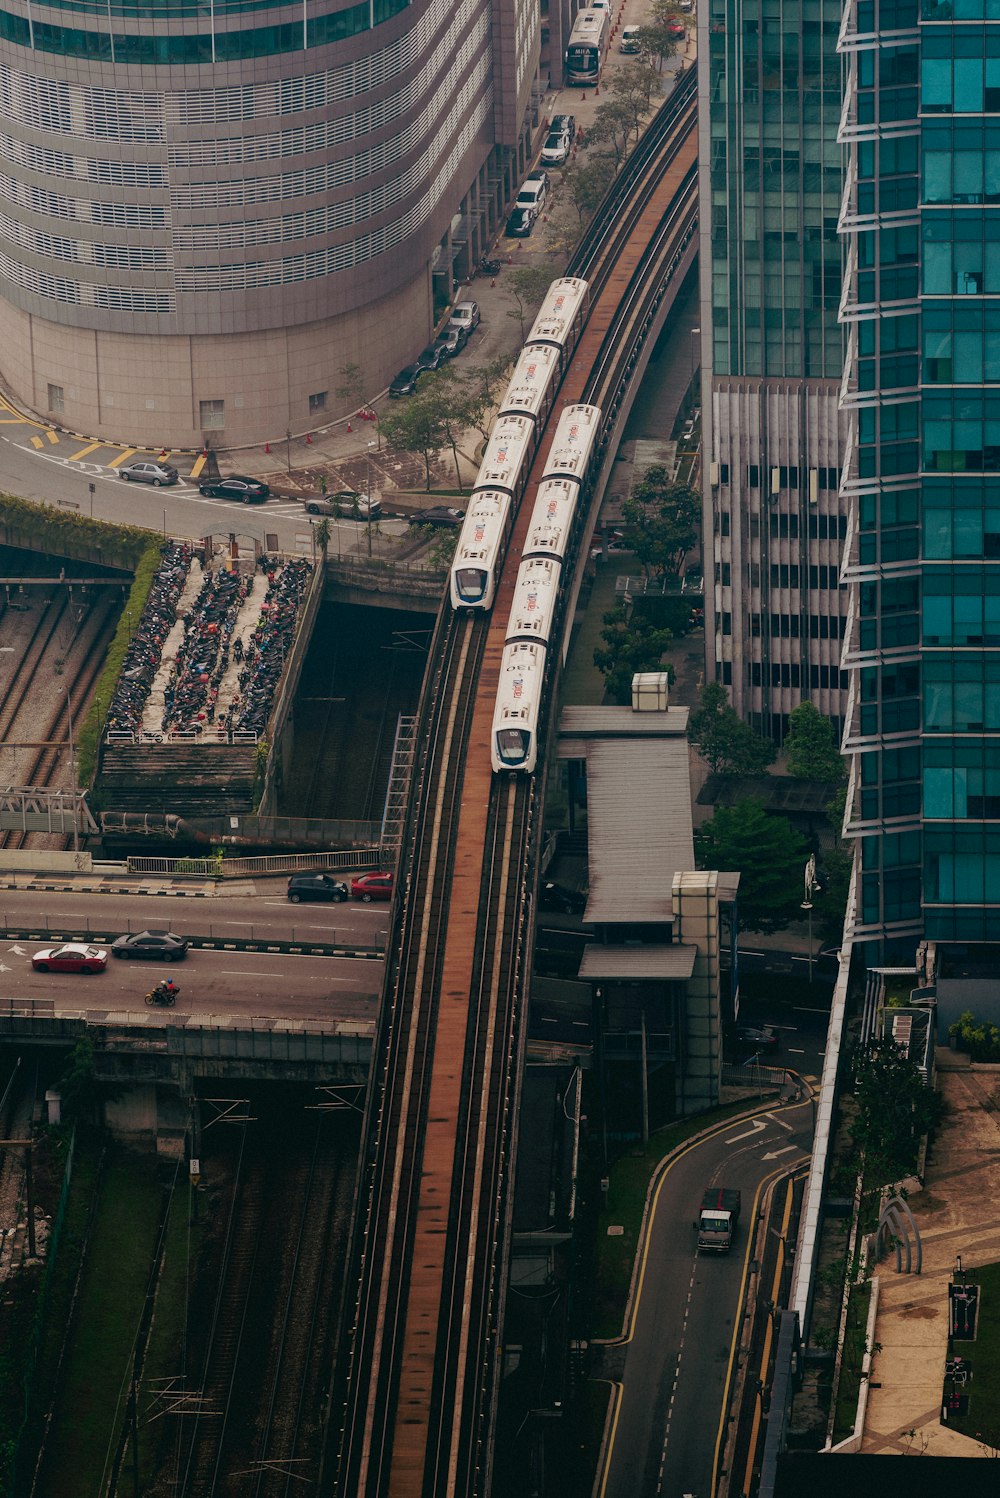 Luftaufnahme eines Zuges auf den Gleisen einer Stadt